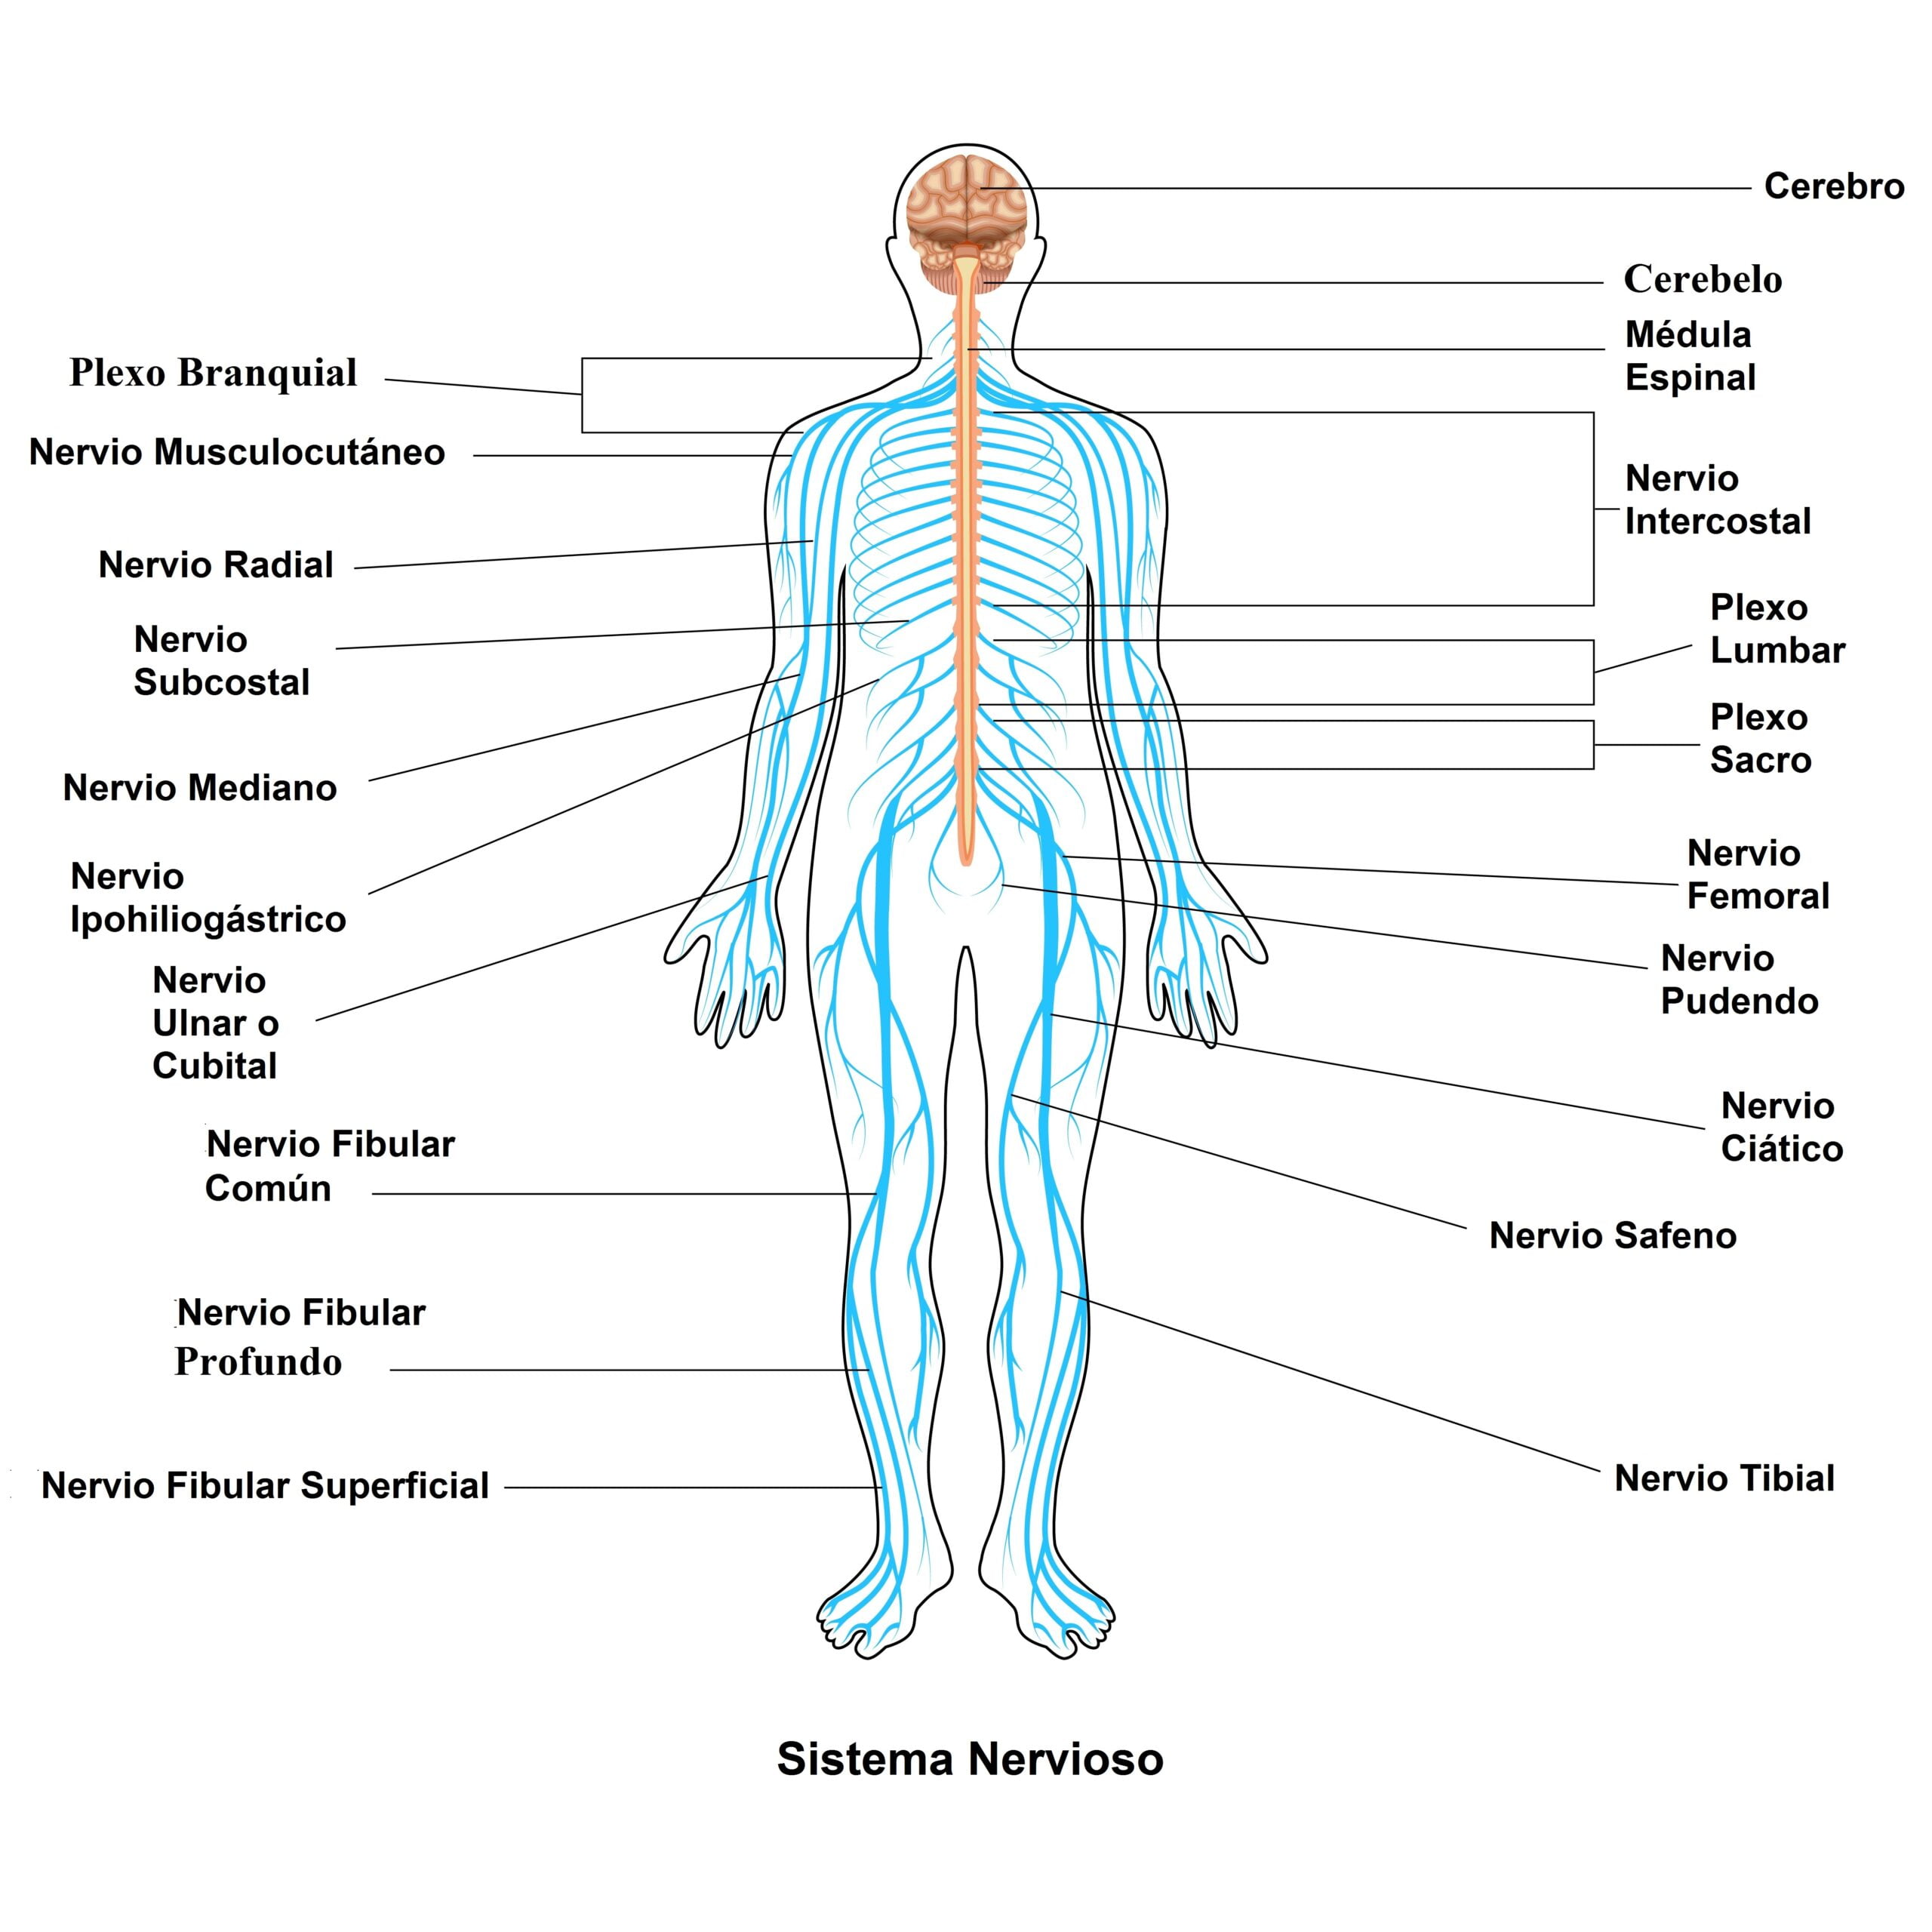 enfermedades del cerebro y del sistema nervioso